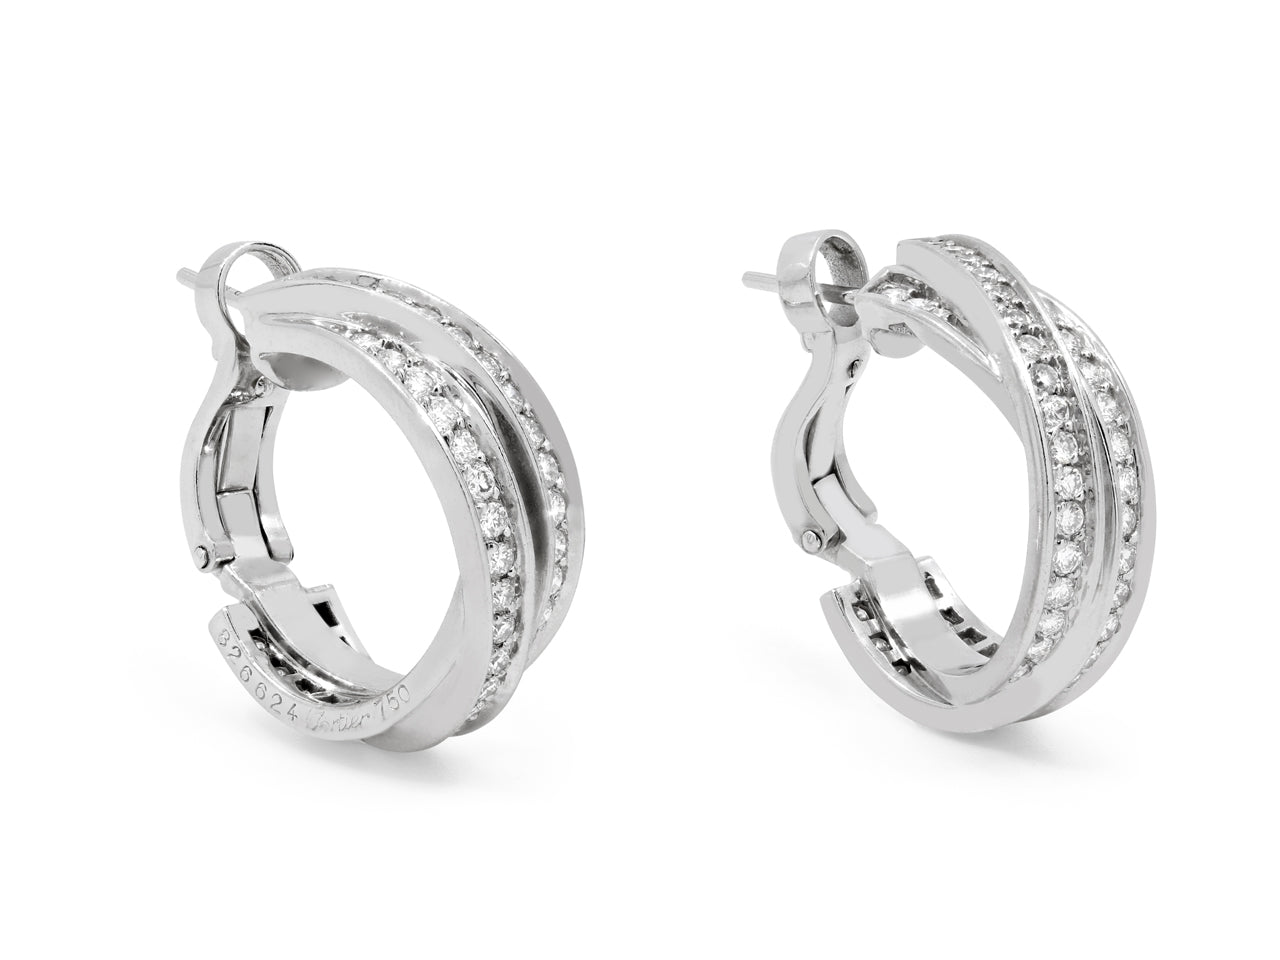 Cartier Diamond Trinity Earrings in 18K White Gold